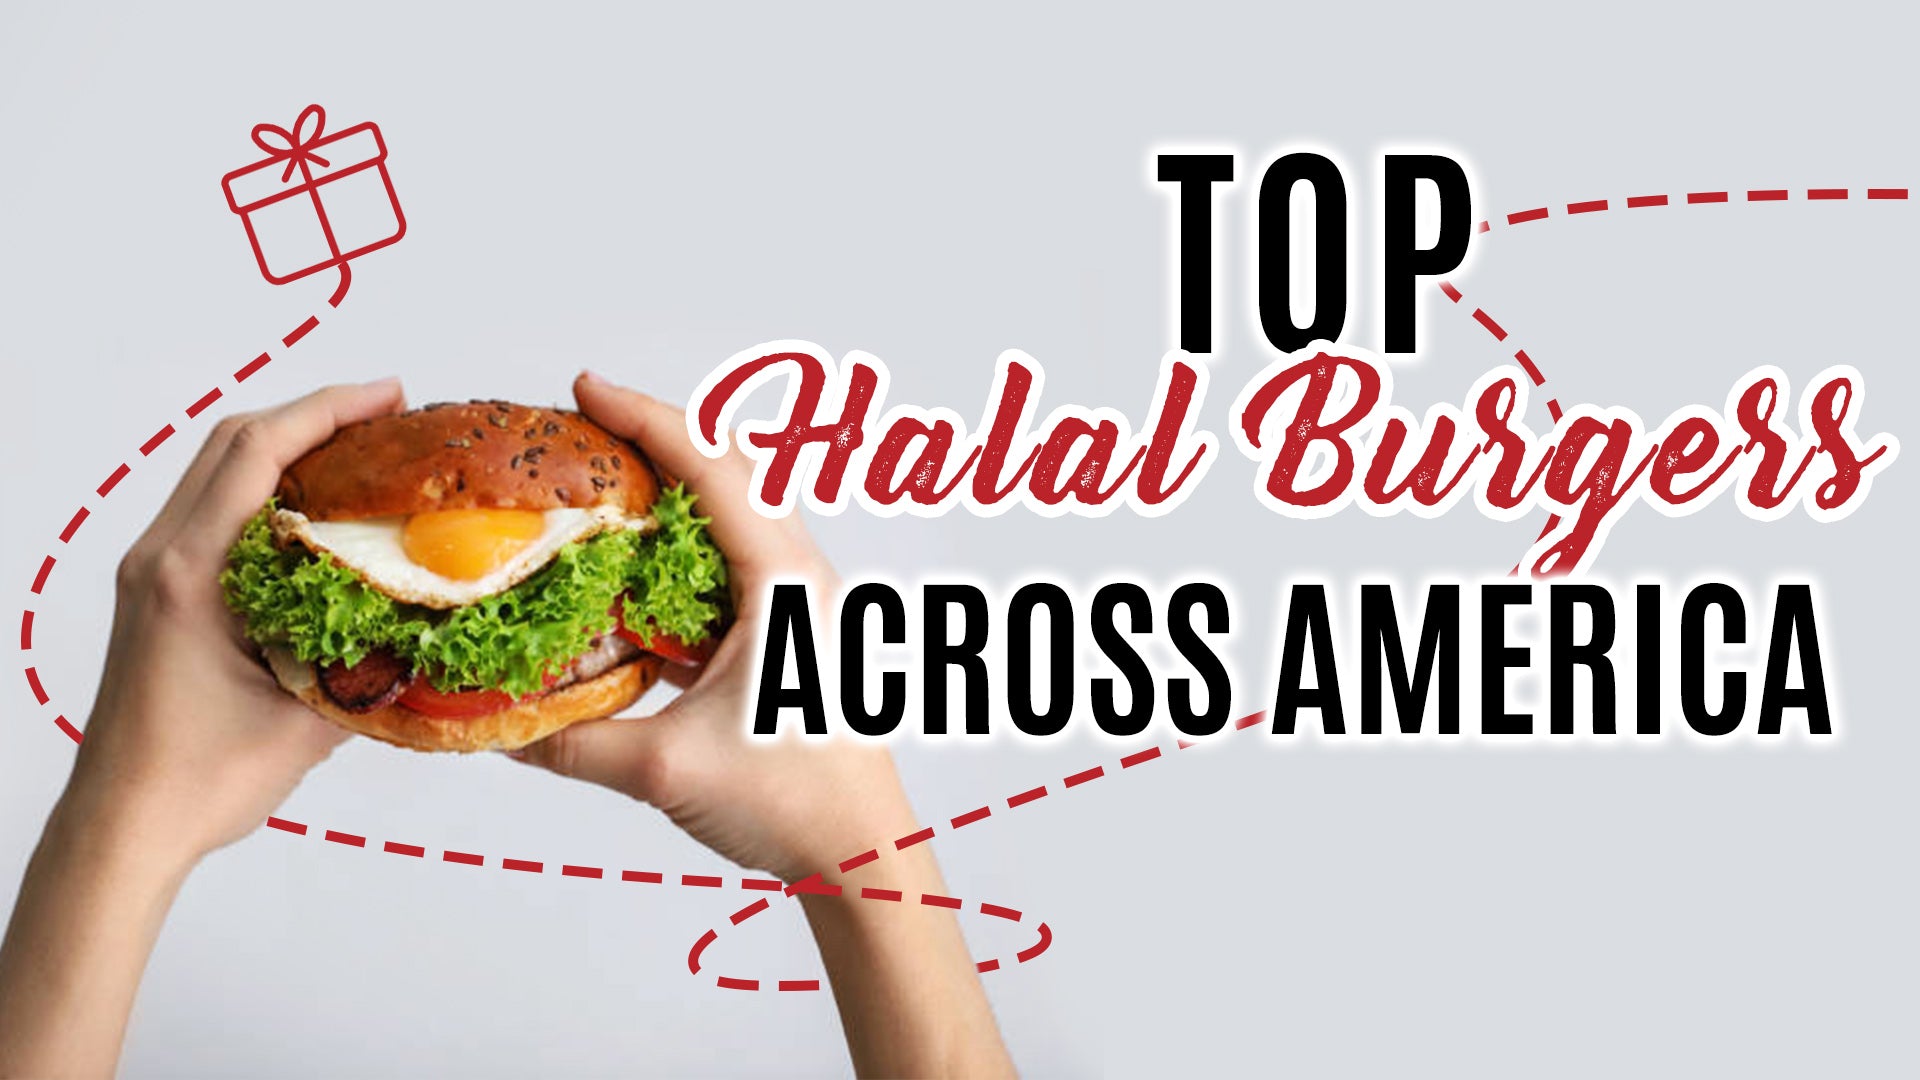 Best Halal Burger Places Near Me - Burger Poster